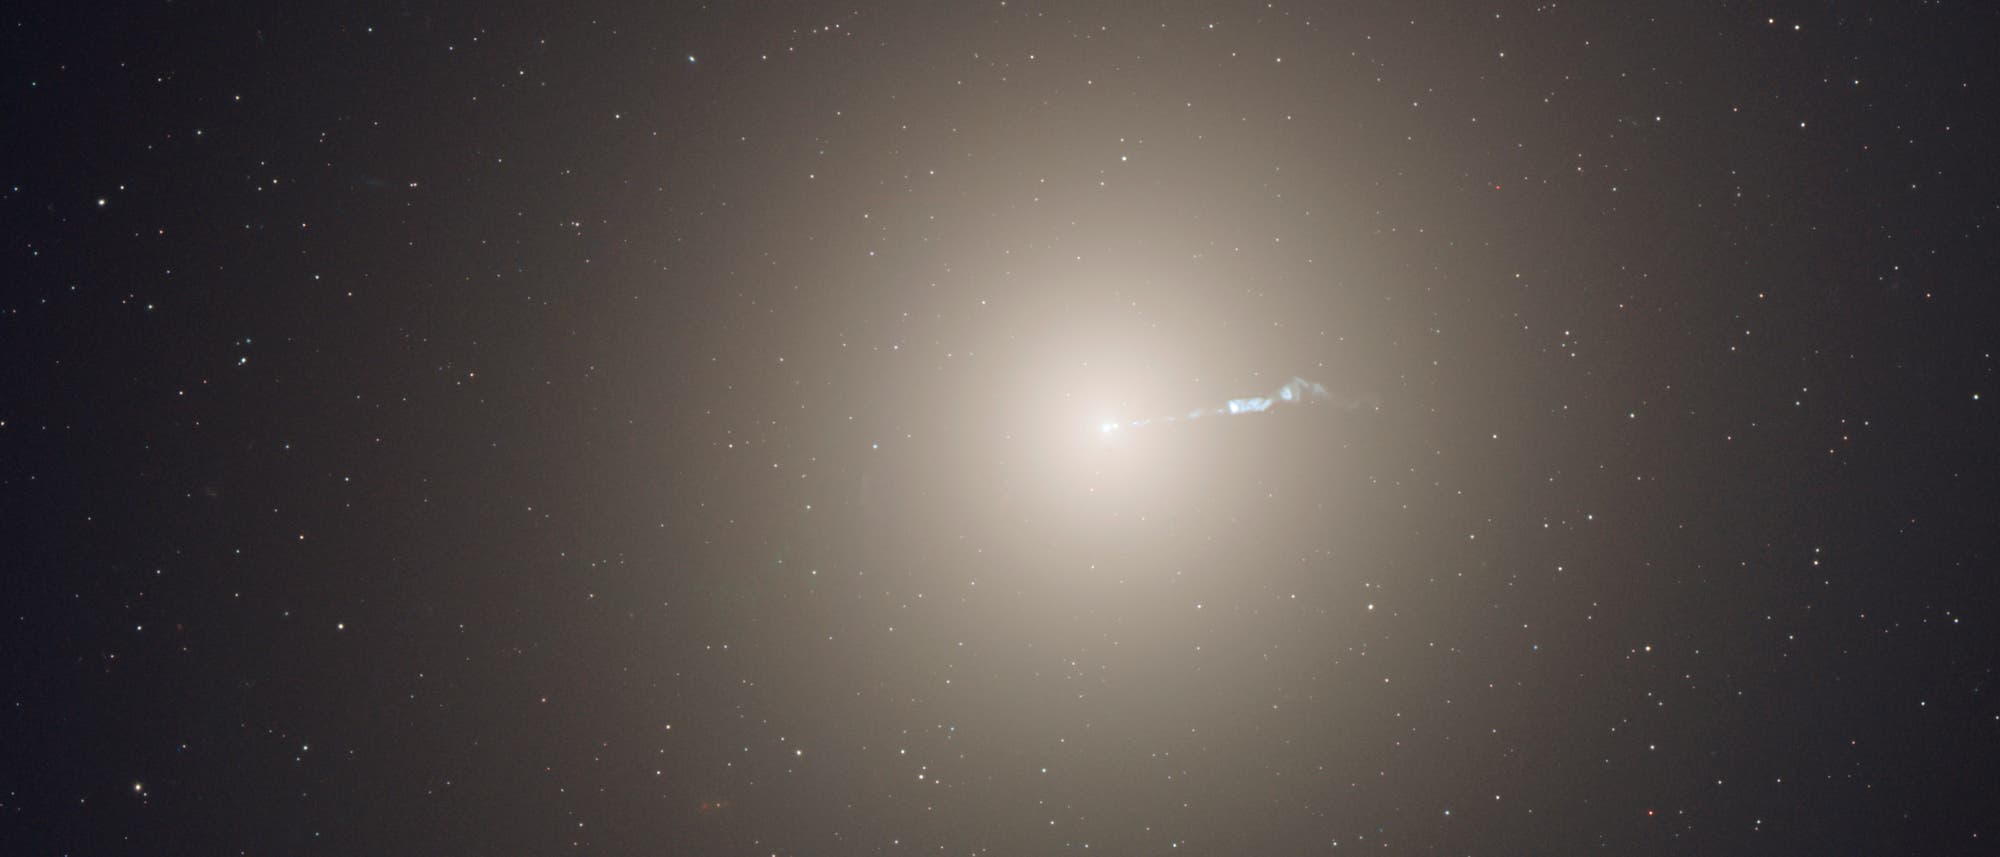 Die elliptische Galaxie Messier 87 ist das dominierende Zentrum des Virgo-Galaxienhaufens, der rund 2000 Mitglieder hat. Sie enthält eine Billion Sterne, hat in ihrem Zentrum ein extrem massereiches Schwarzes Loch mit sechs Milliarden Sonnenmassen und ist von 15000 Kugelsternhaufen umgeben.